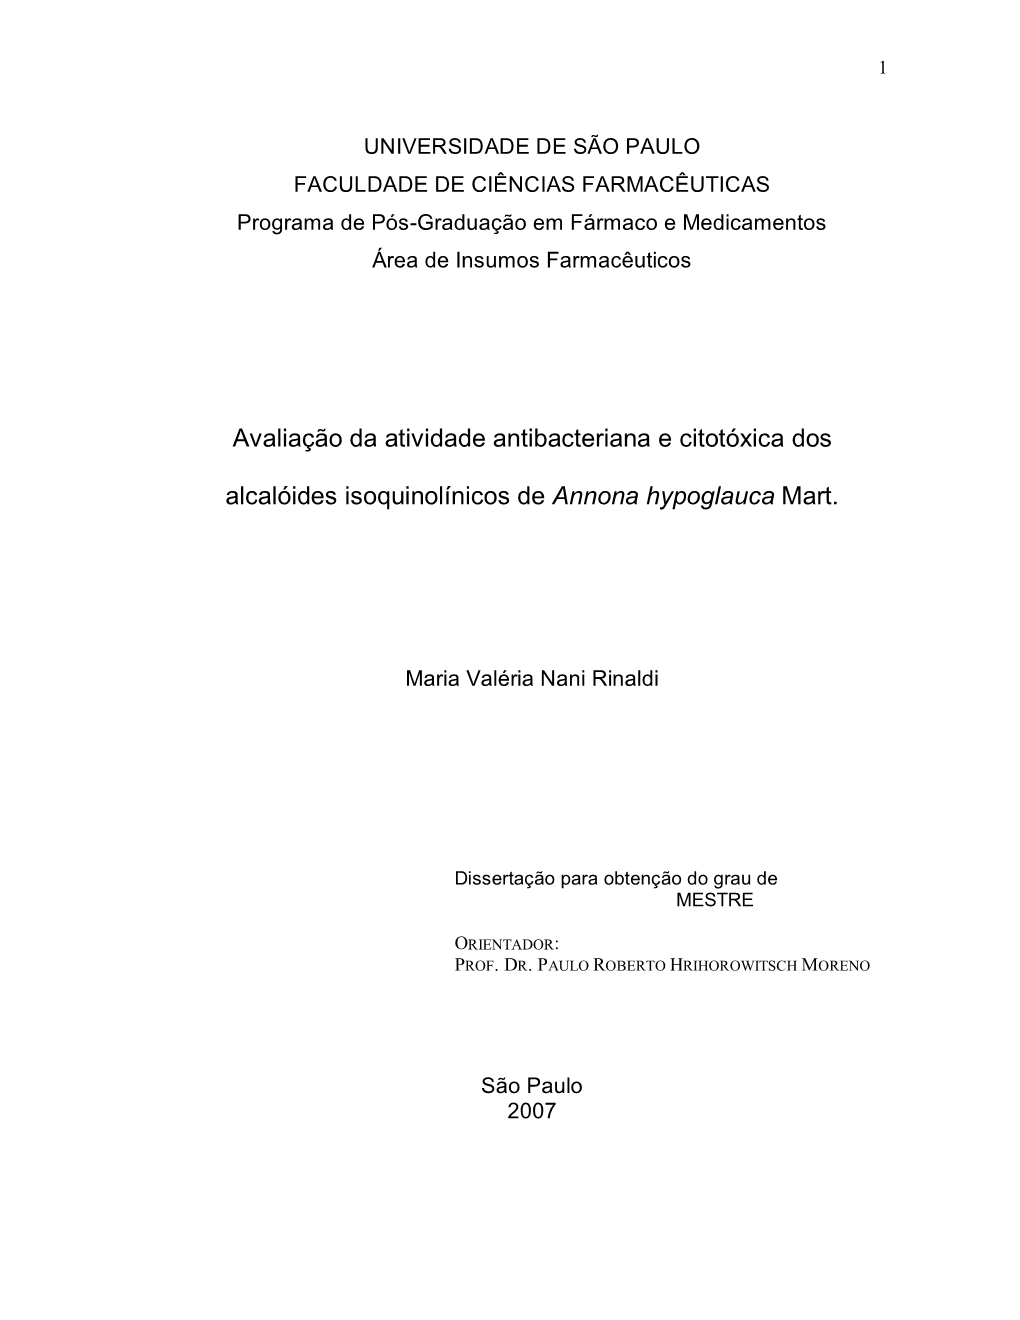 Avaliação Da Atividade Antibacteriana E Citotóxica Dos Alcalóides Isoquinolínicos De Annona Hypoglauca Mart